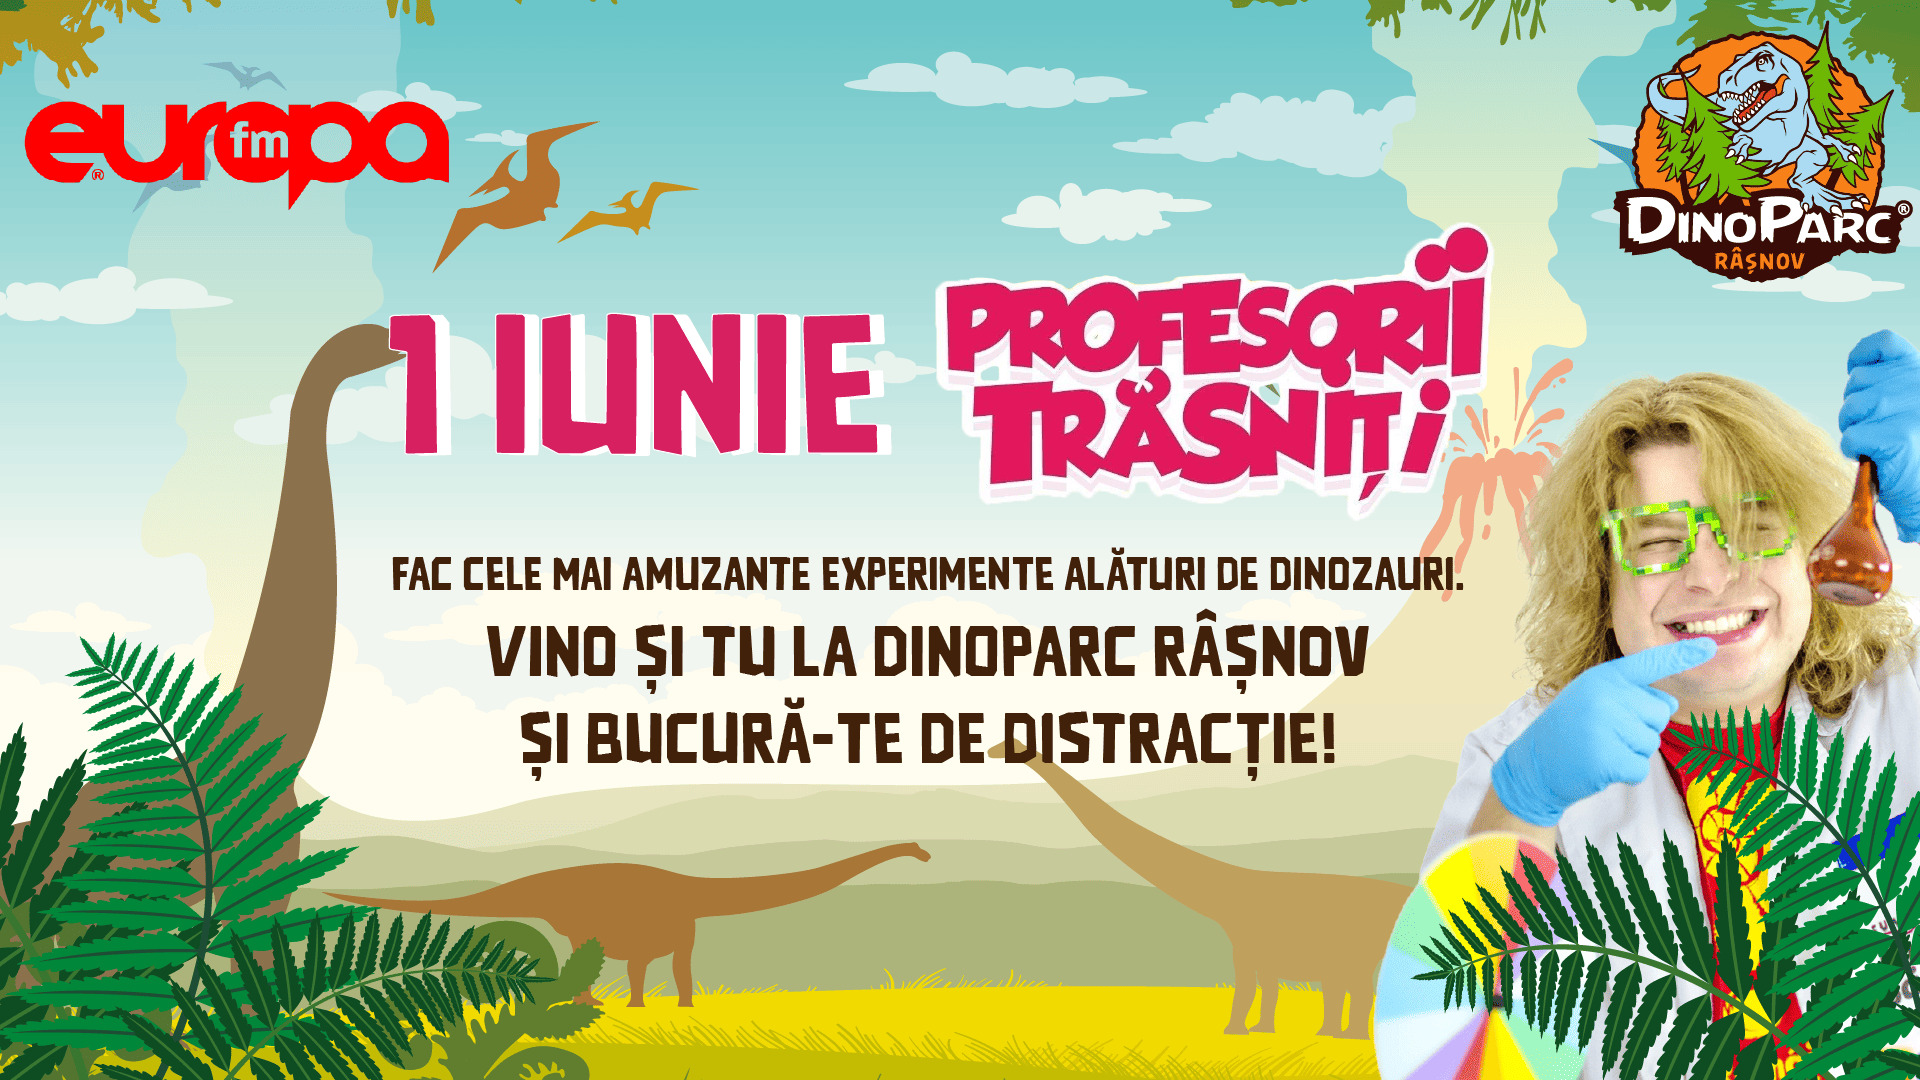 De 1 iunie, Profesorii Trăsniți vin la Dino Parc Râșnov!